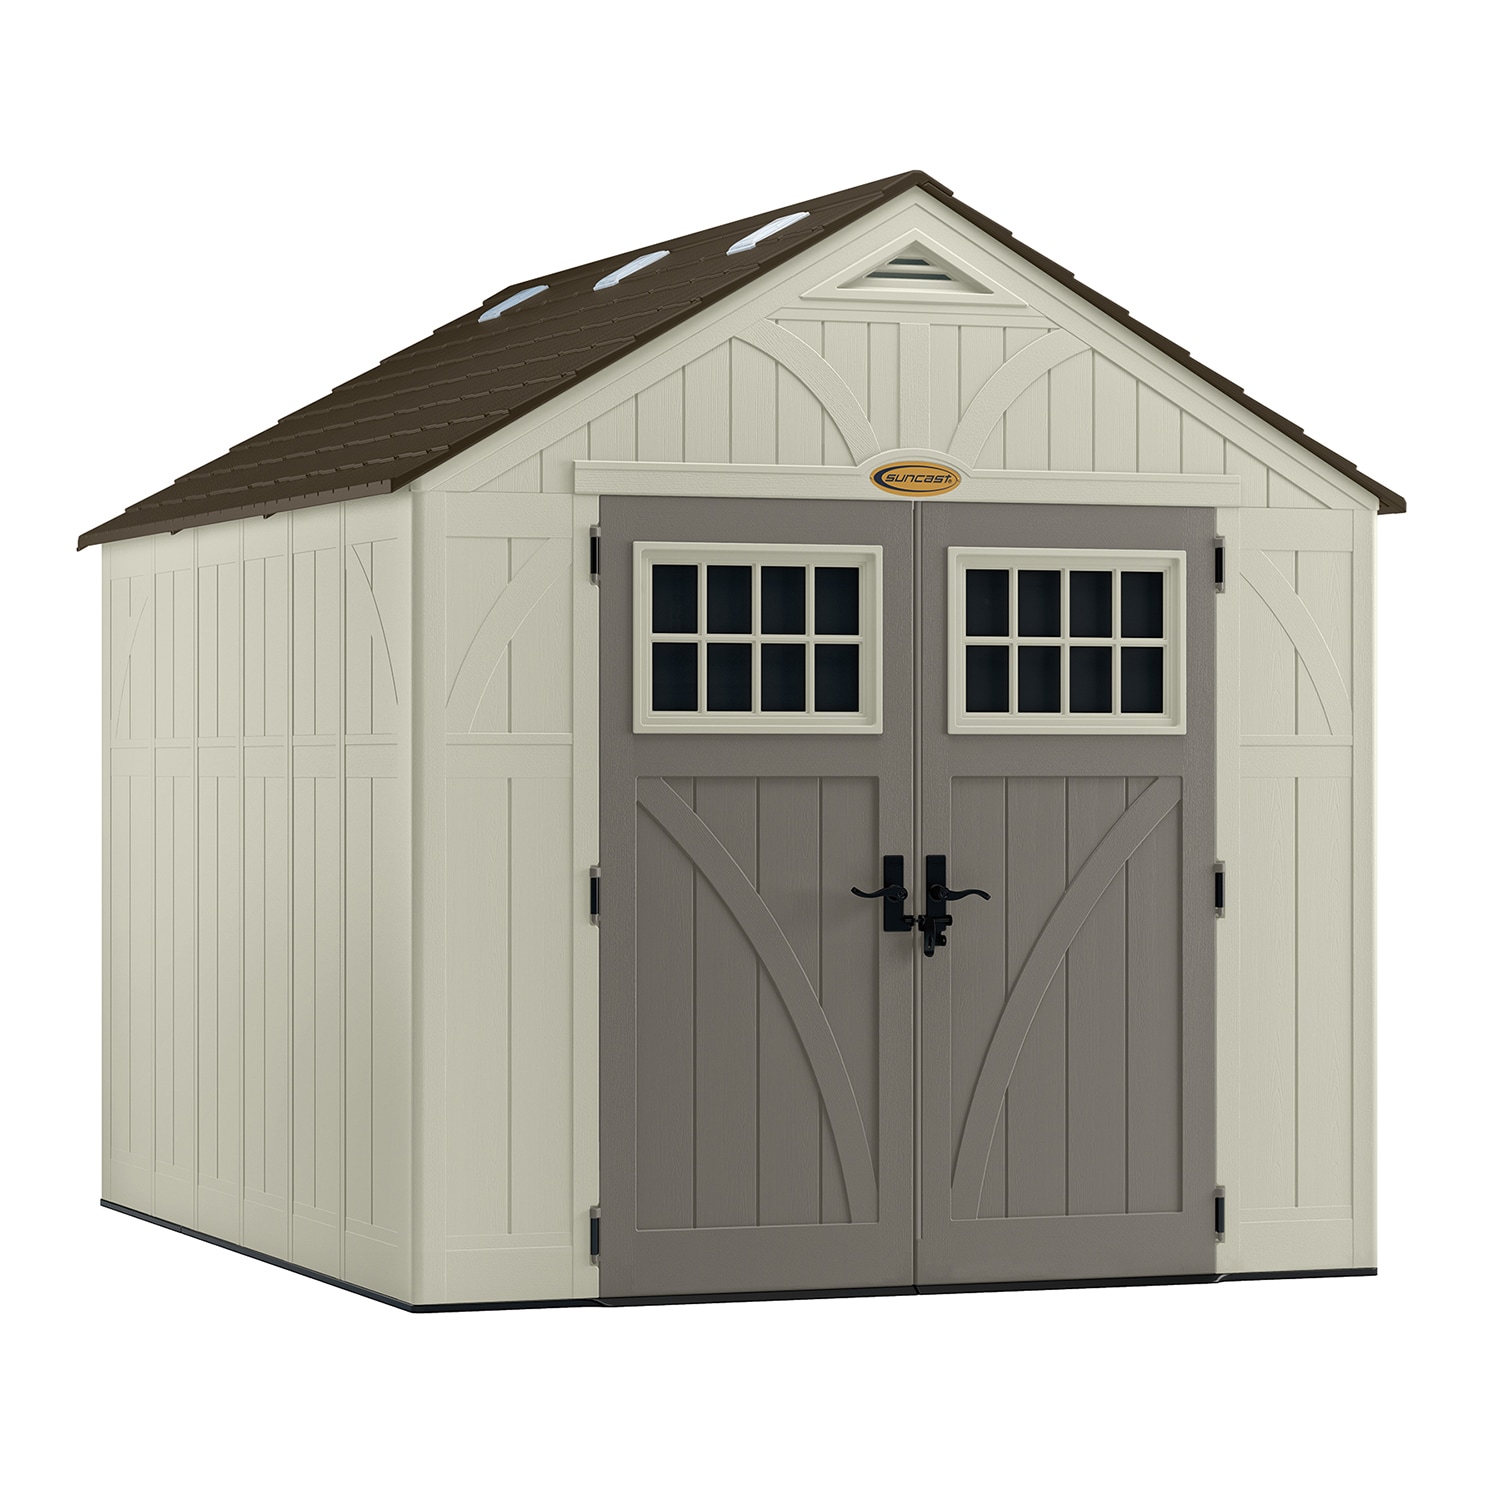 Suncast 8x10 tremont storage shed 1